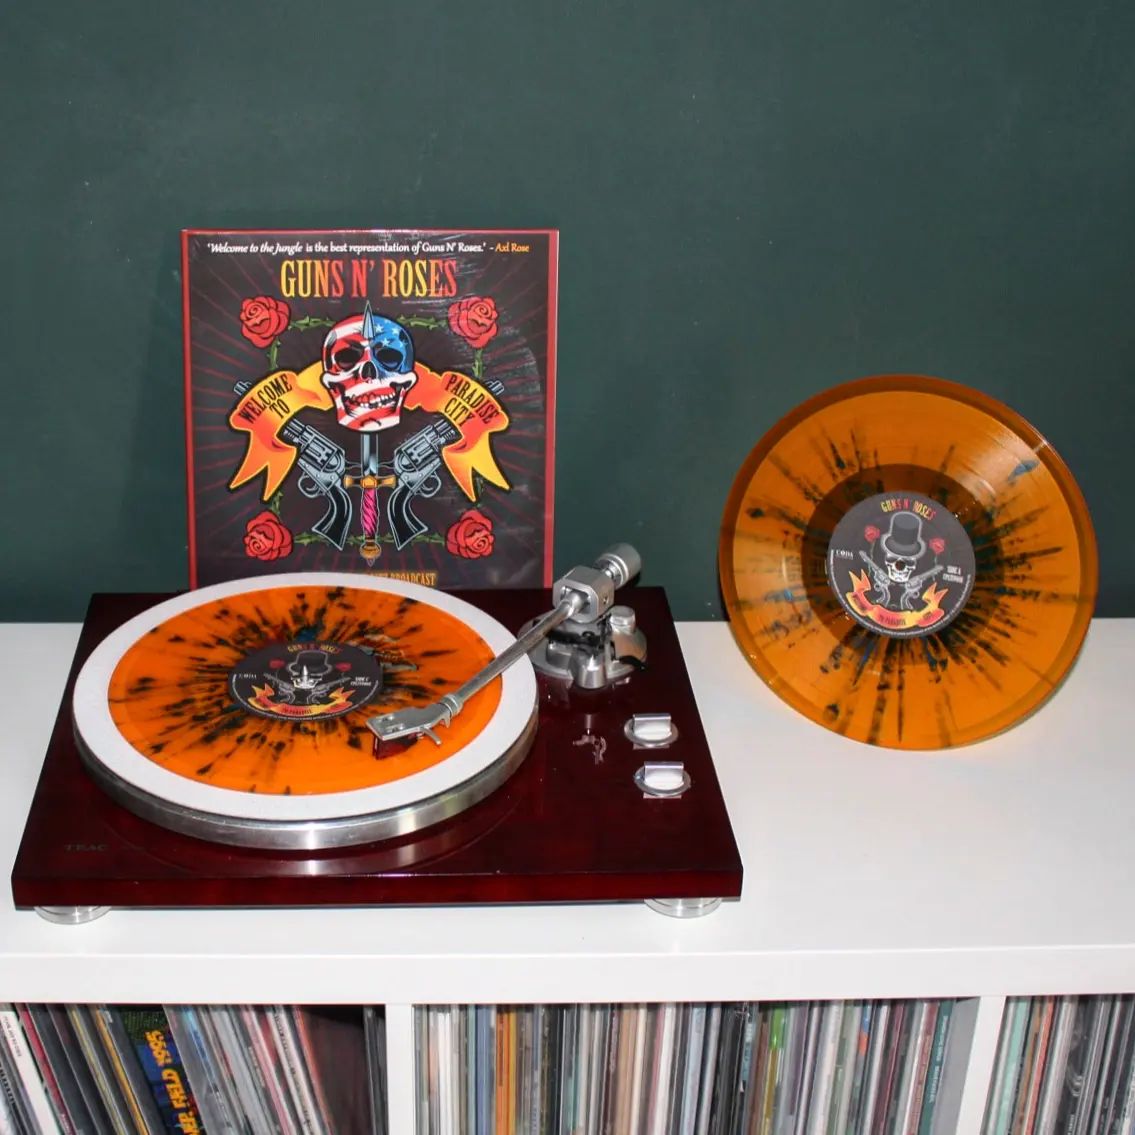 Irgendwie habe ich eine besondere Beziehung zu dieser Band, weil 'Appetite for Destruction' tatsächlich das erste Album war, das ich mir von meinem eigenen Taschengeld gekauft habe. Als ich diesen Release bei @residentbrighton
gesehen habe, musste ich direkt zuschlagen. Ein echt schick aufgemachtes Sammlerstück. Und die Mucke kriegt mich immer noch! 😎  Guns N' Roses - Welcome To Paradise City: The Legendary Ritz Broadcast auf 2x orange splatter 10" Vinyl  #vinyl #vinyladdict #gunsnroses #paradisecity #splattervinyl #codarecords @shop_coda_records